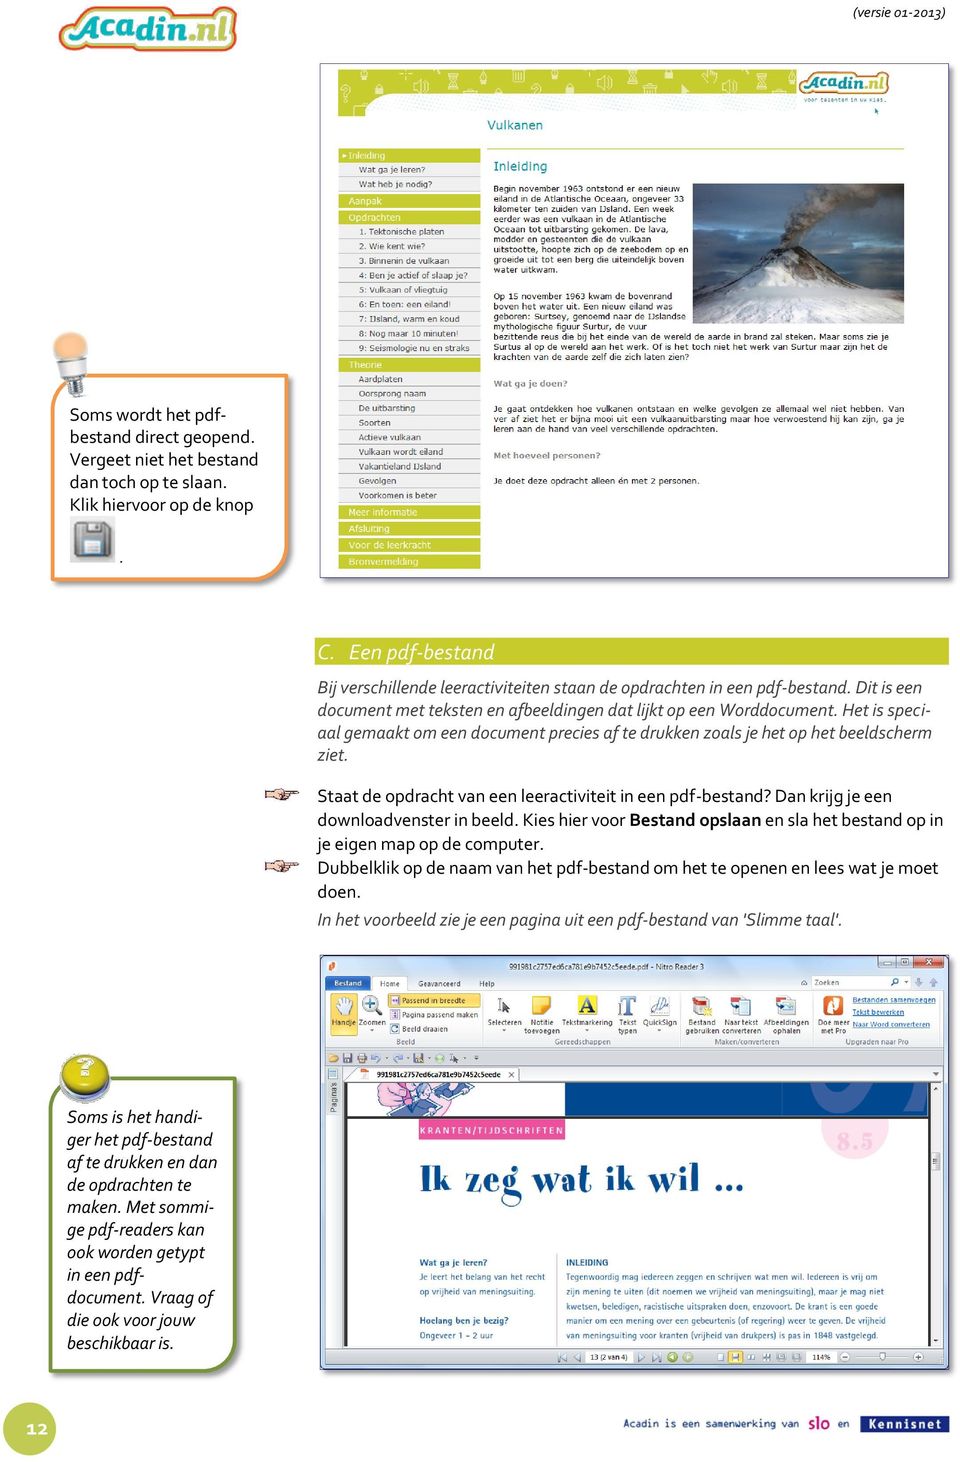 Het is speciaal gemaakt om een document precies af te drukken zoals je het op het beeldscherm ziet. Staat de opdracht van een leeractiviteit in een pdf-bestand?